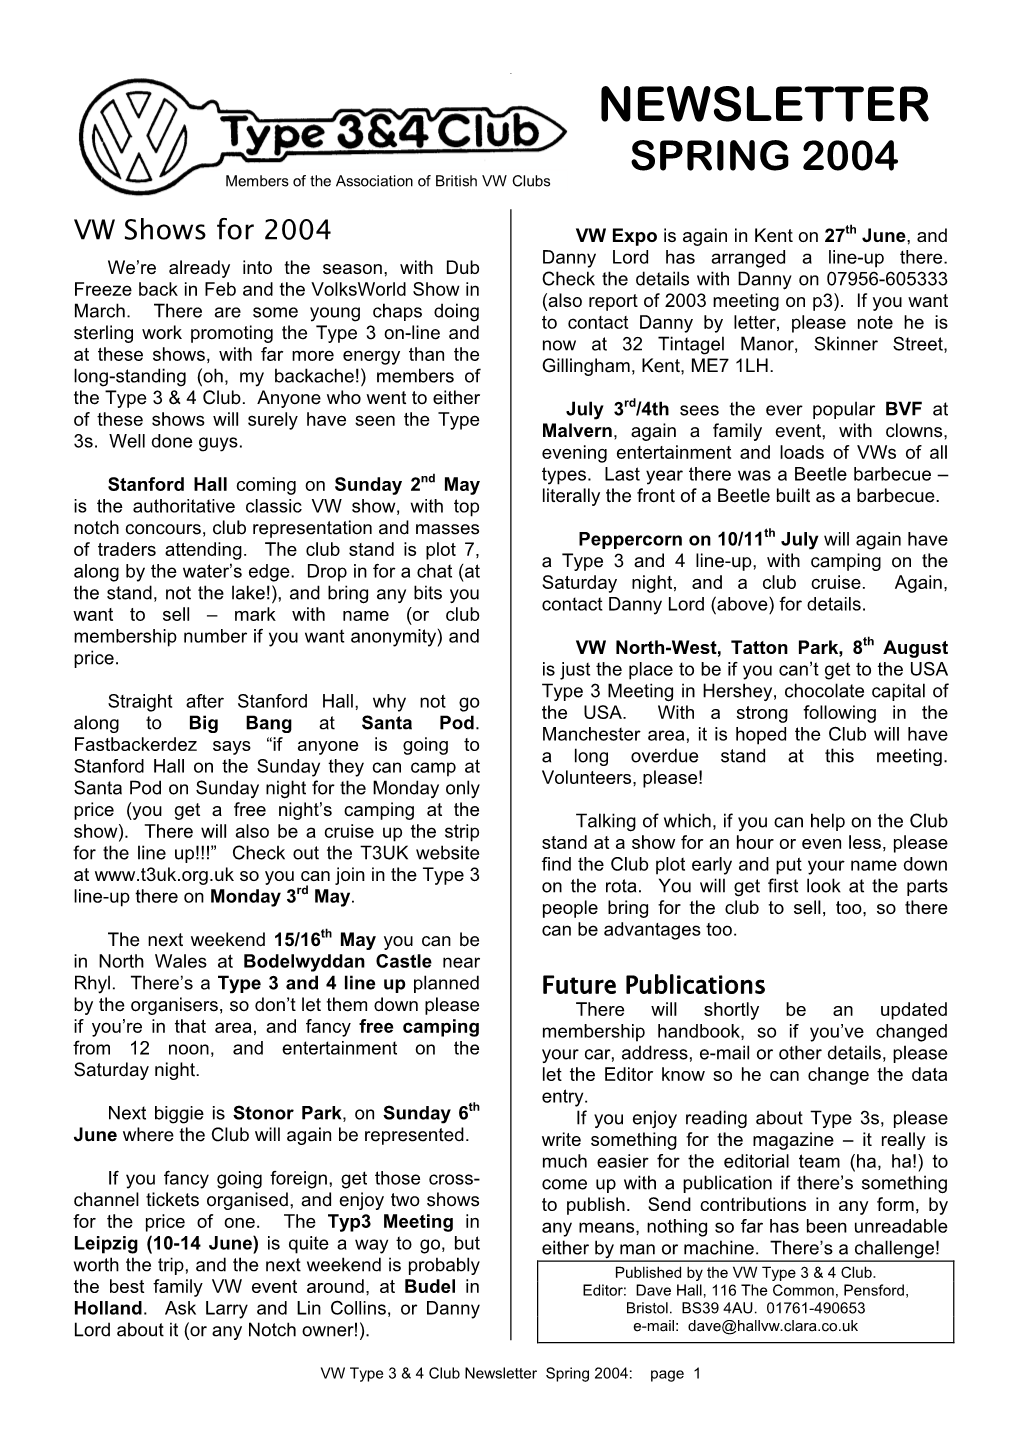 Feb 97 Newsletter